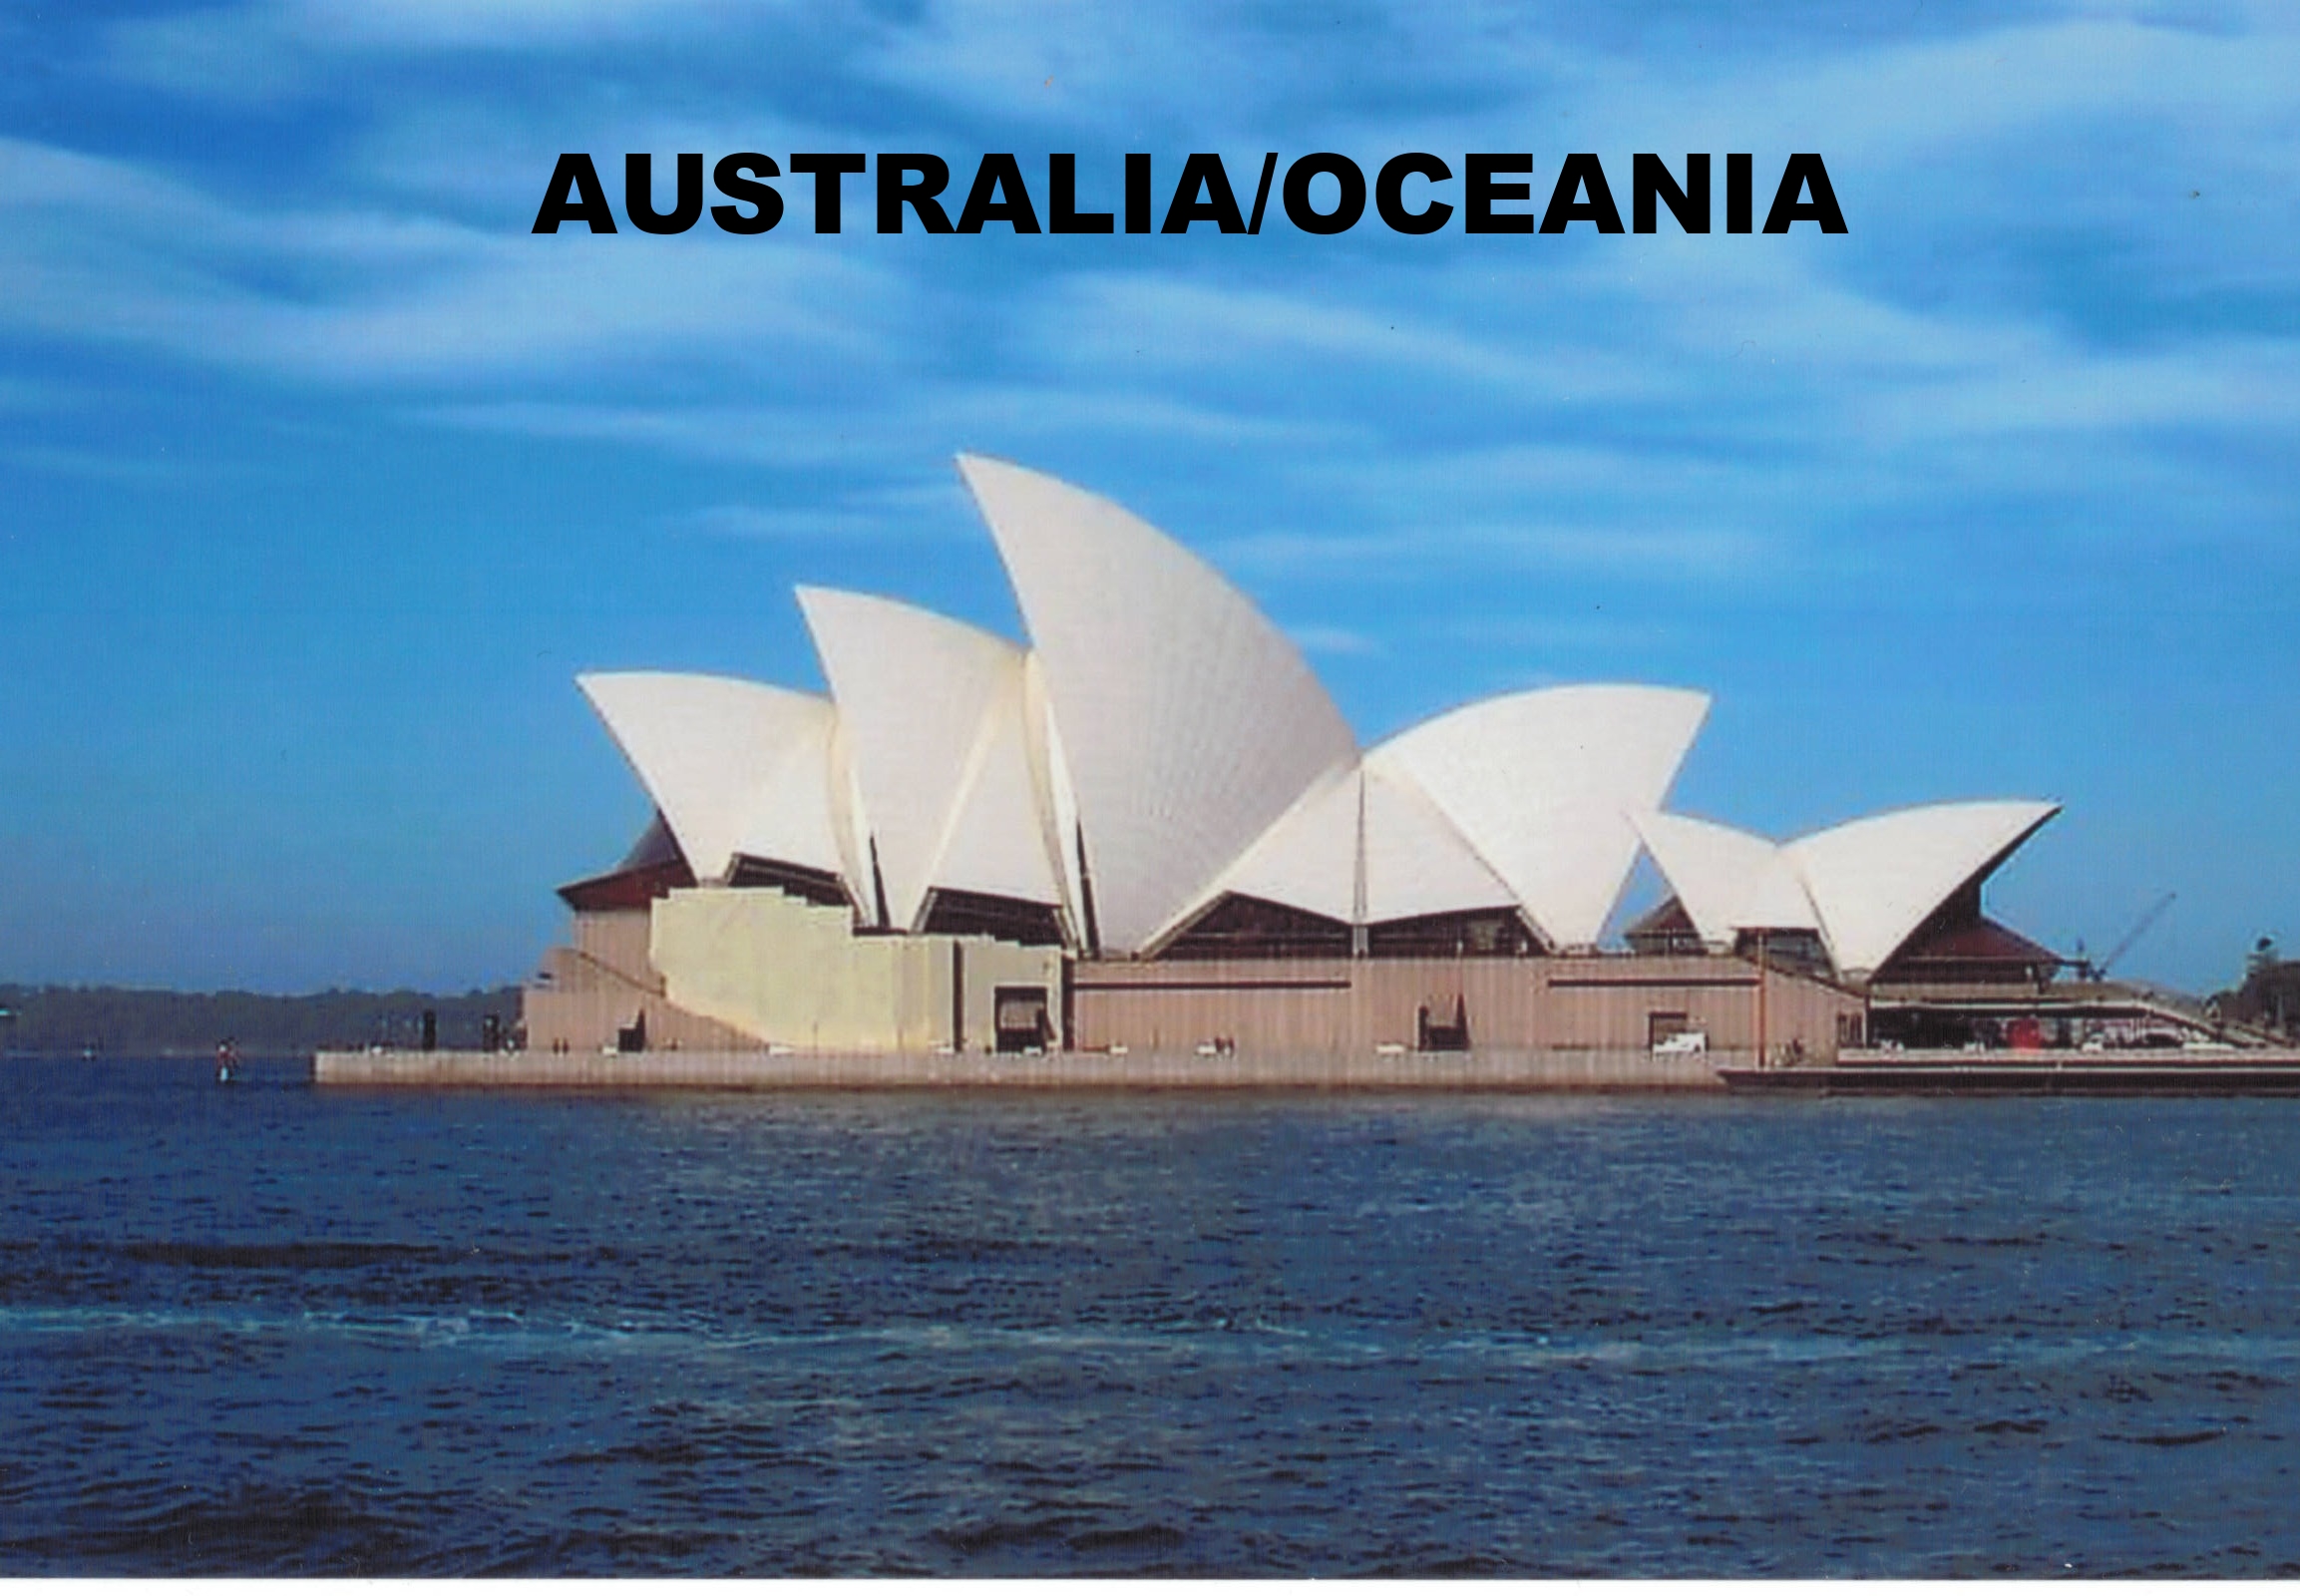 AUSTRALIA/OCEANIA